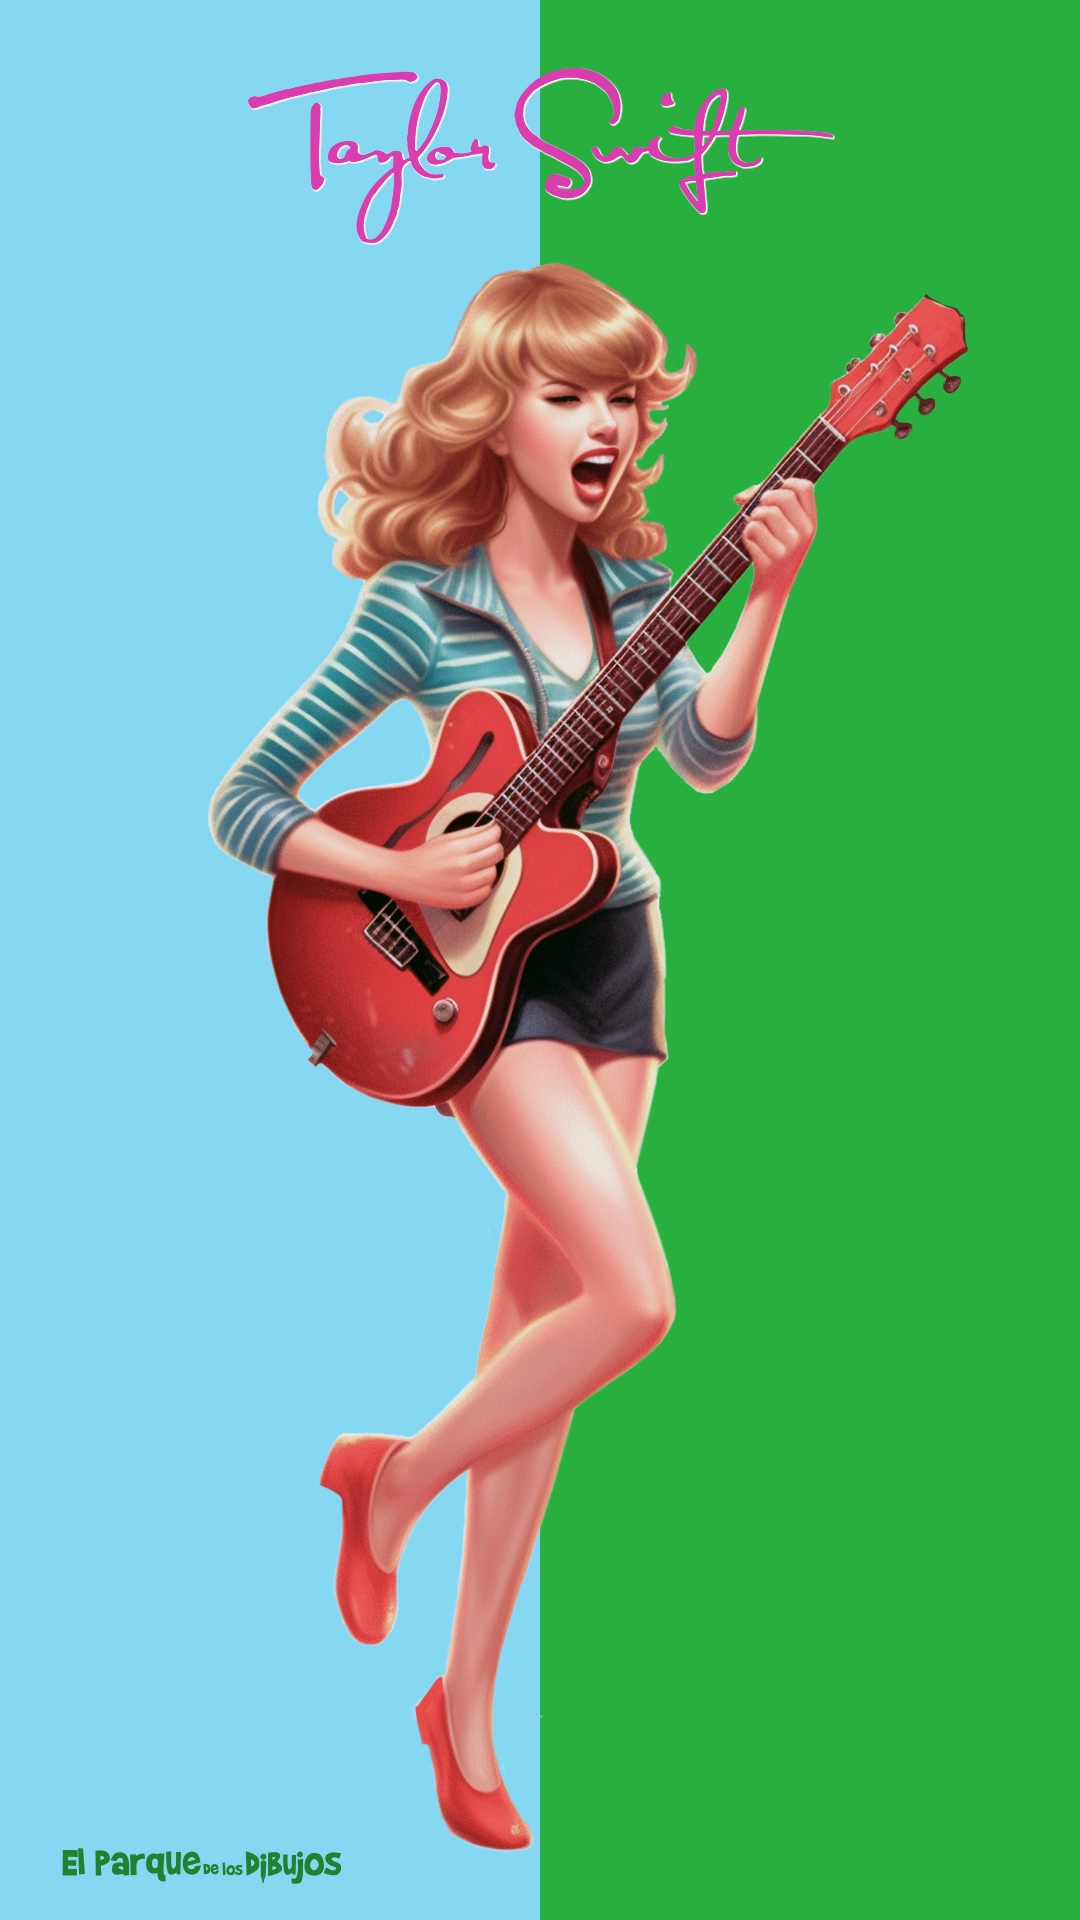 Ilustración de Taylor Swift cantando con la guitarra para descargar e imprimir